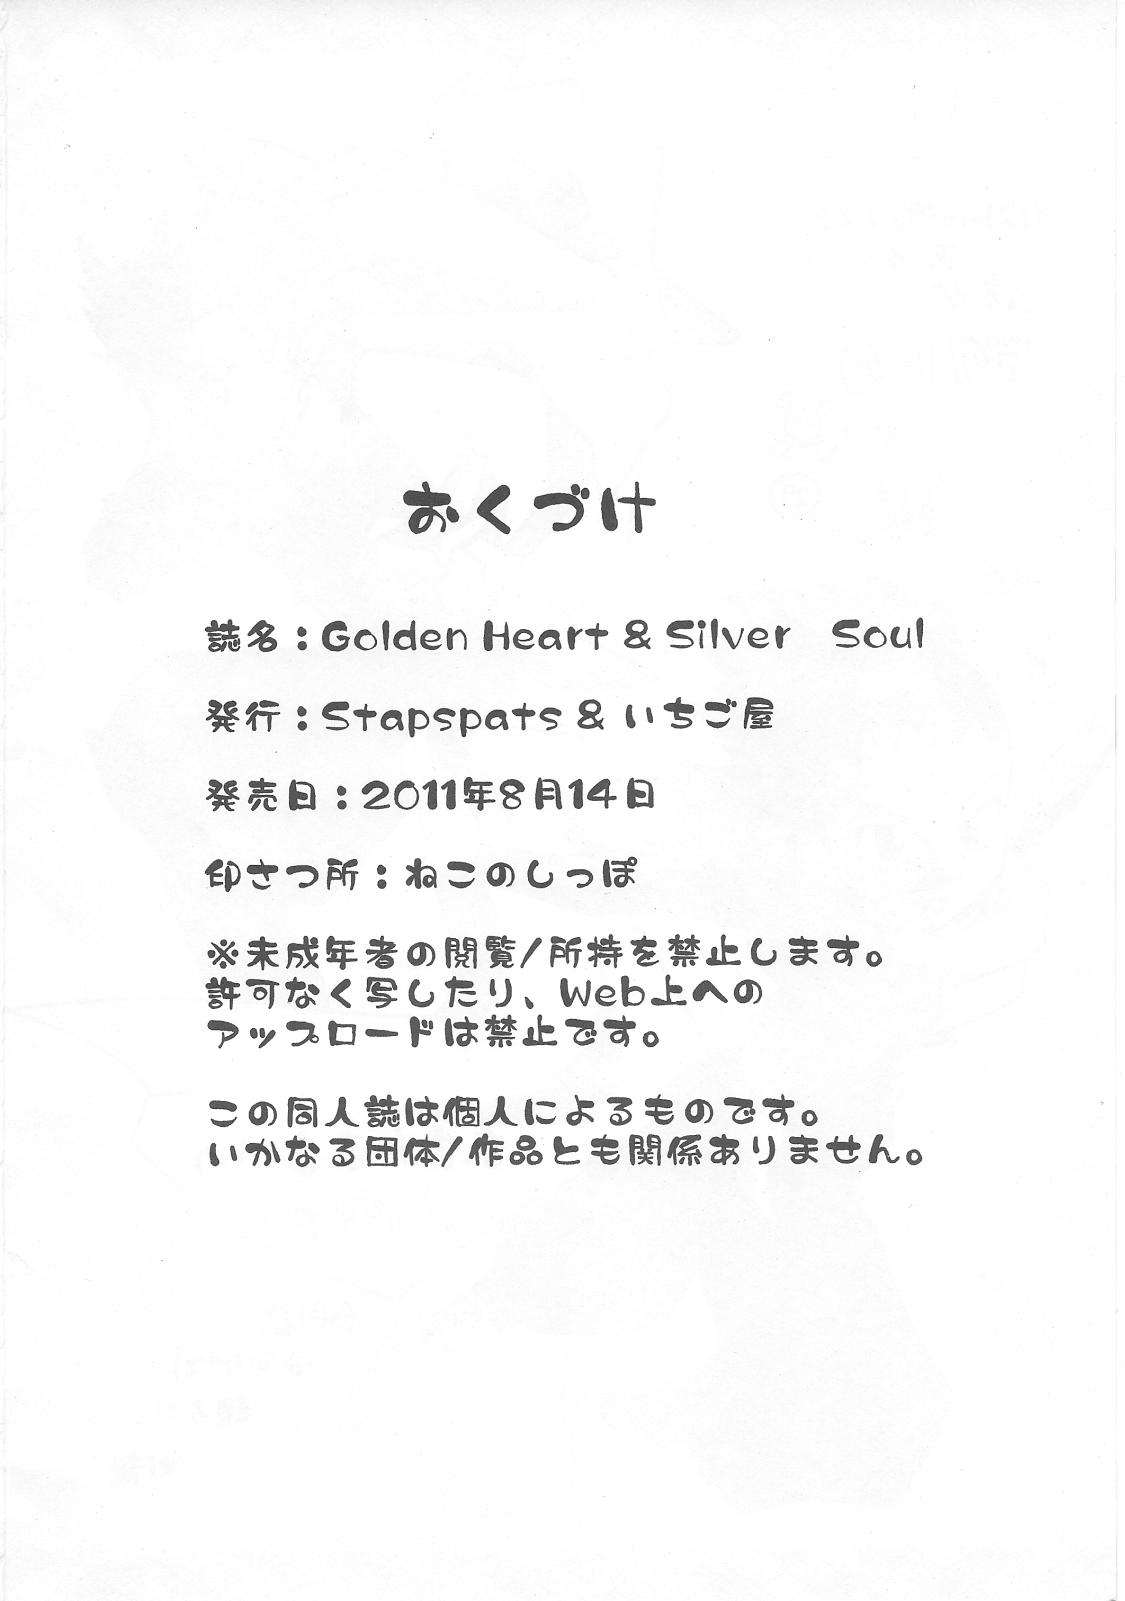 Golden Heart & Silver Soul 32